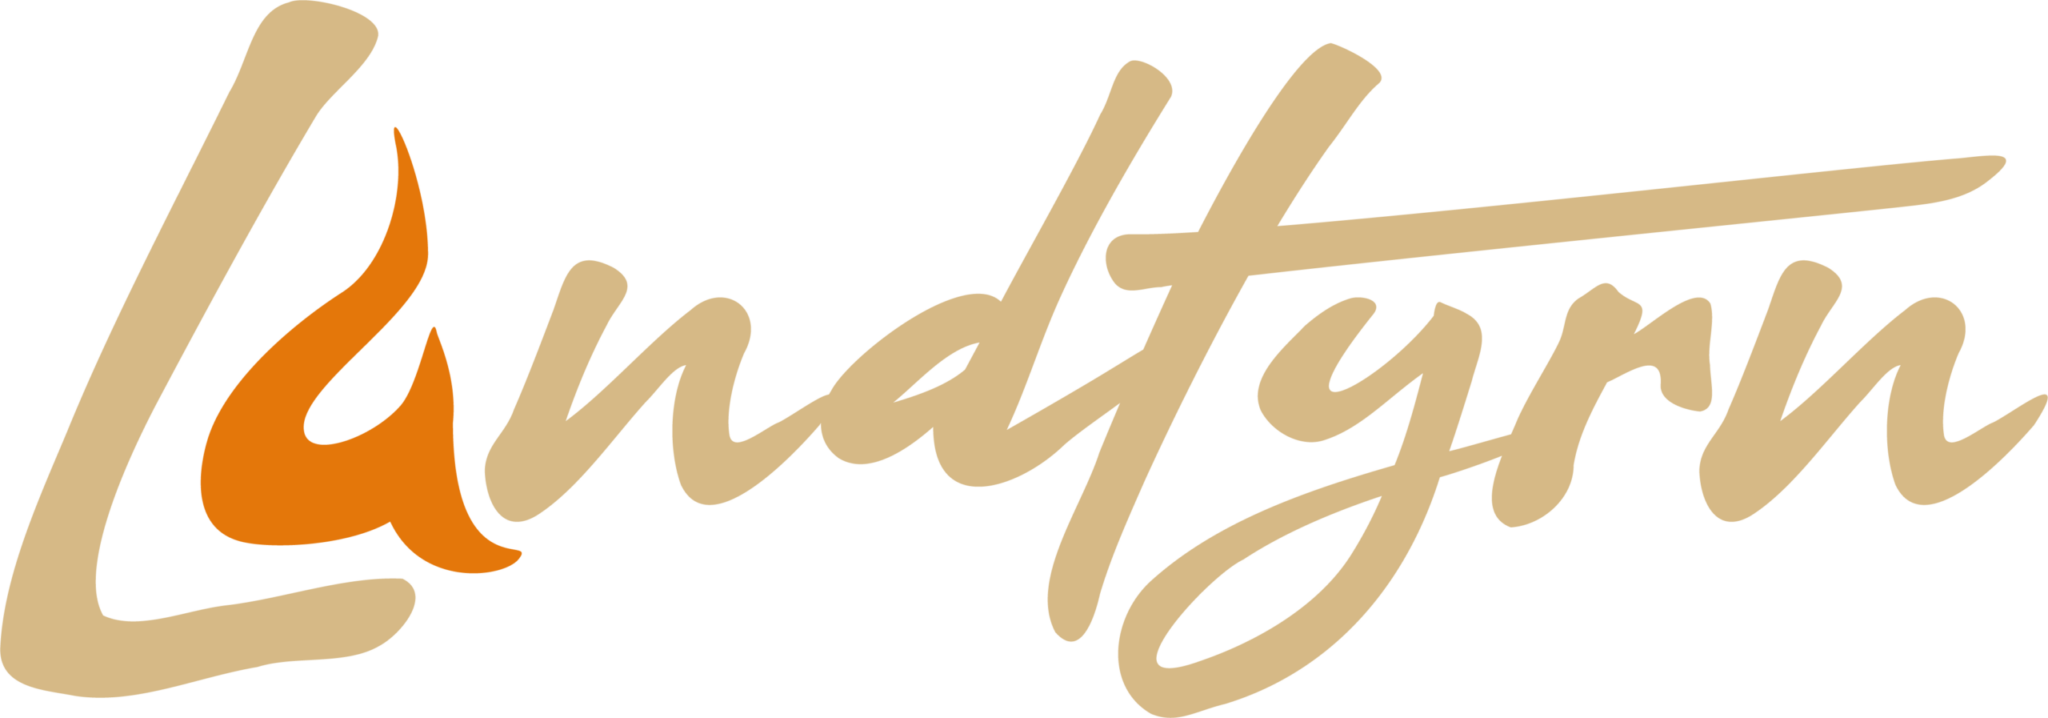 Landtyrn-logo